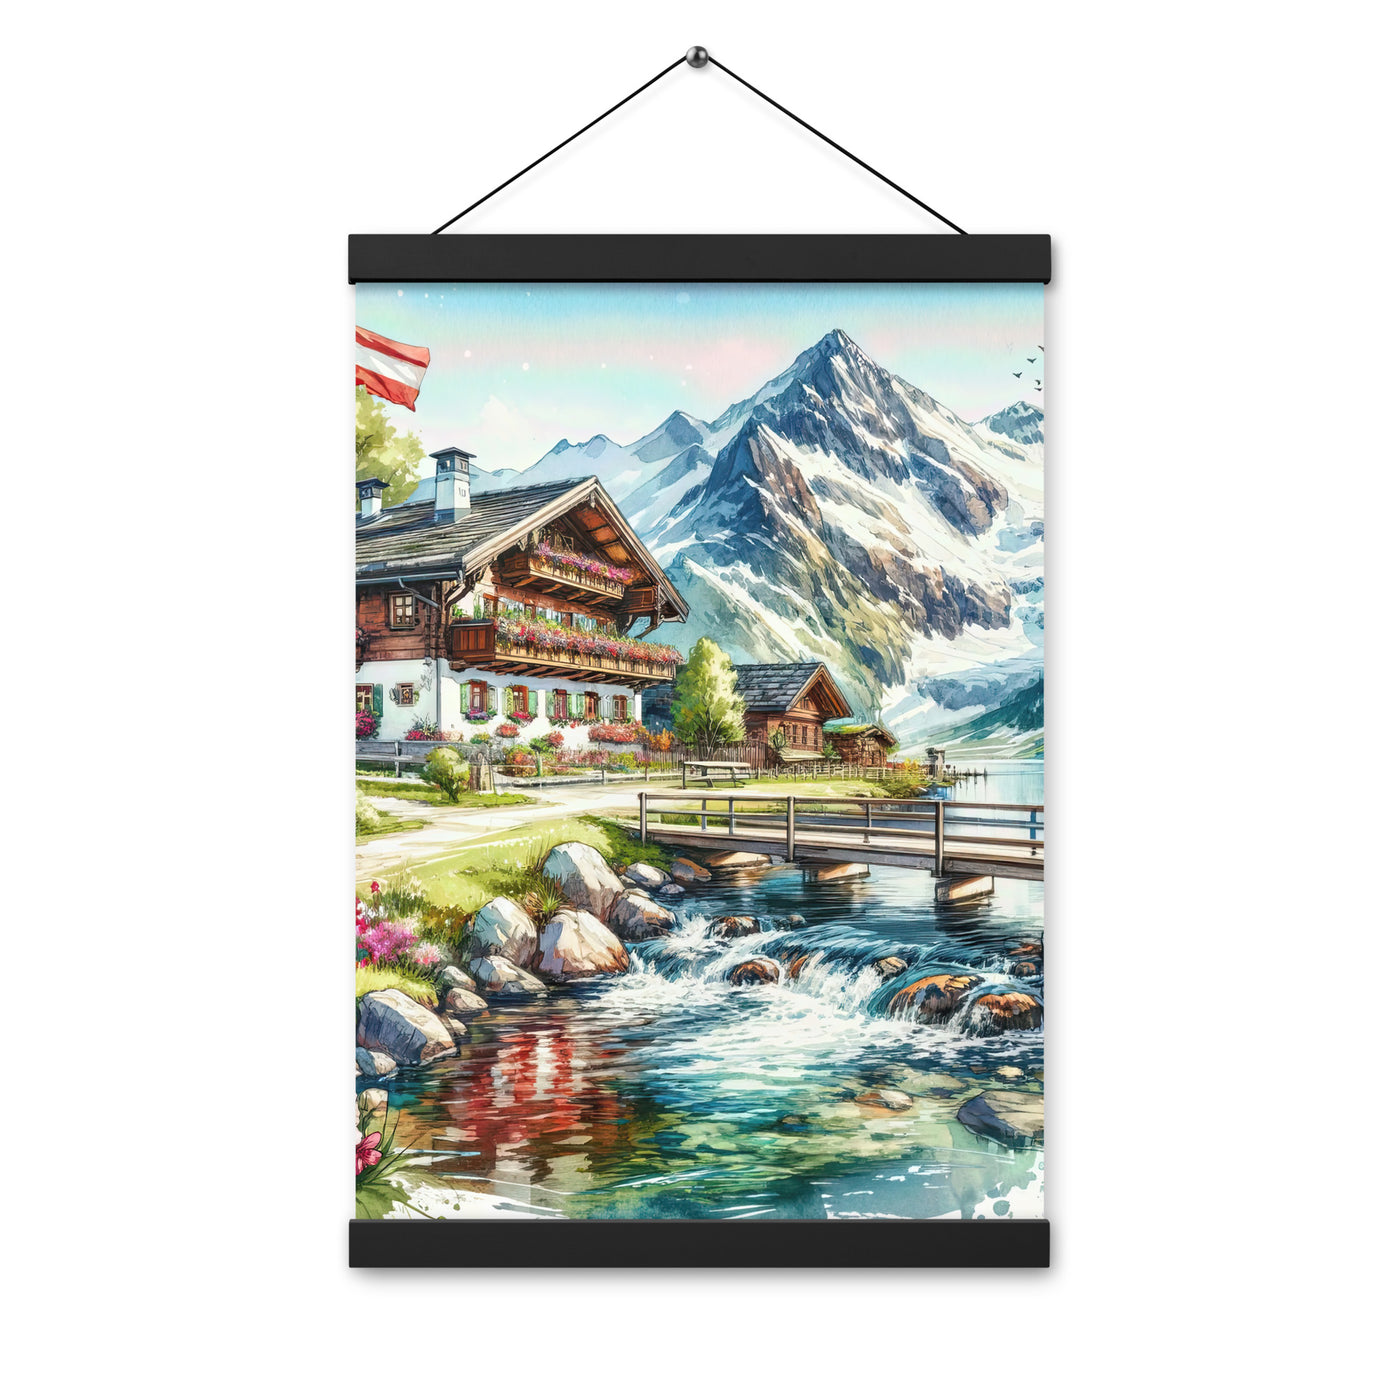 Aquarell der frühlingshaften Alpenkette mit österreichischer Flagge und schmelzendem Schnee - Enhanced Matte Paper Poster With Hanger berge xxx yyy zzz 30.5 x 45.7 cm